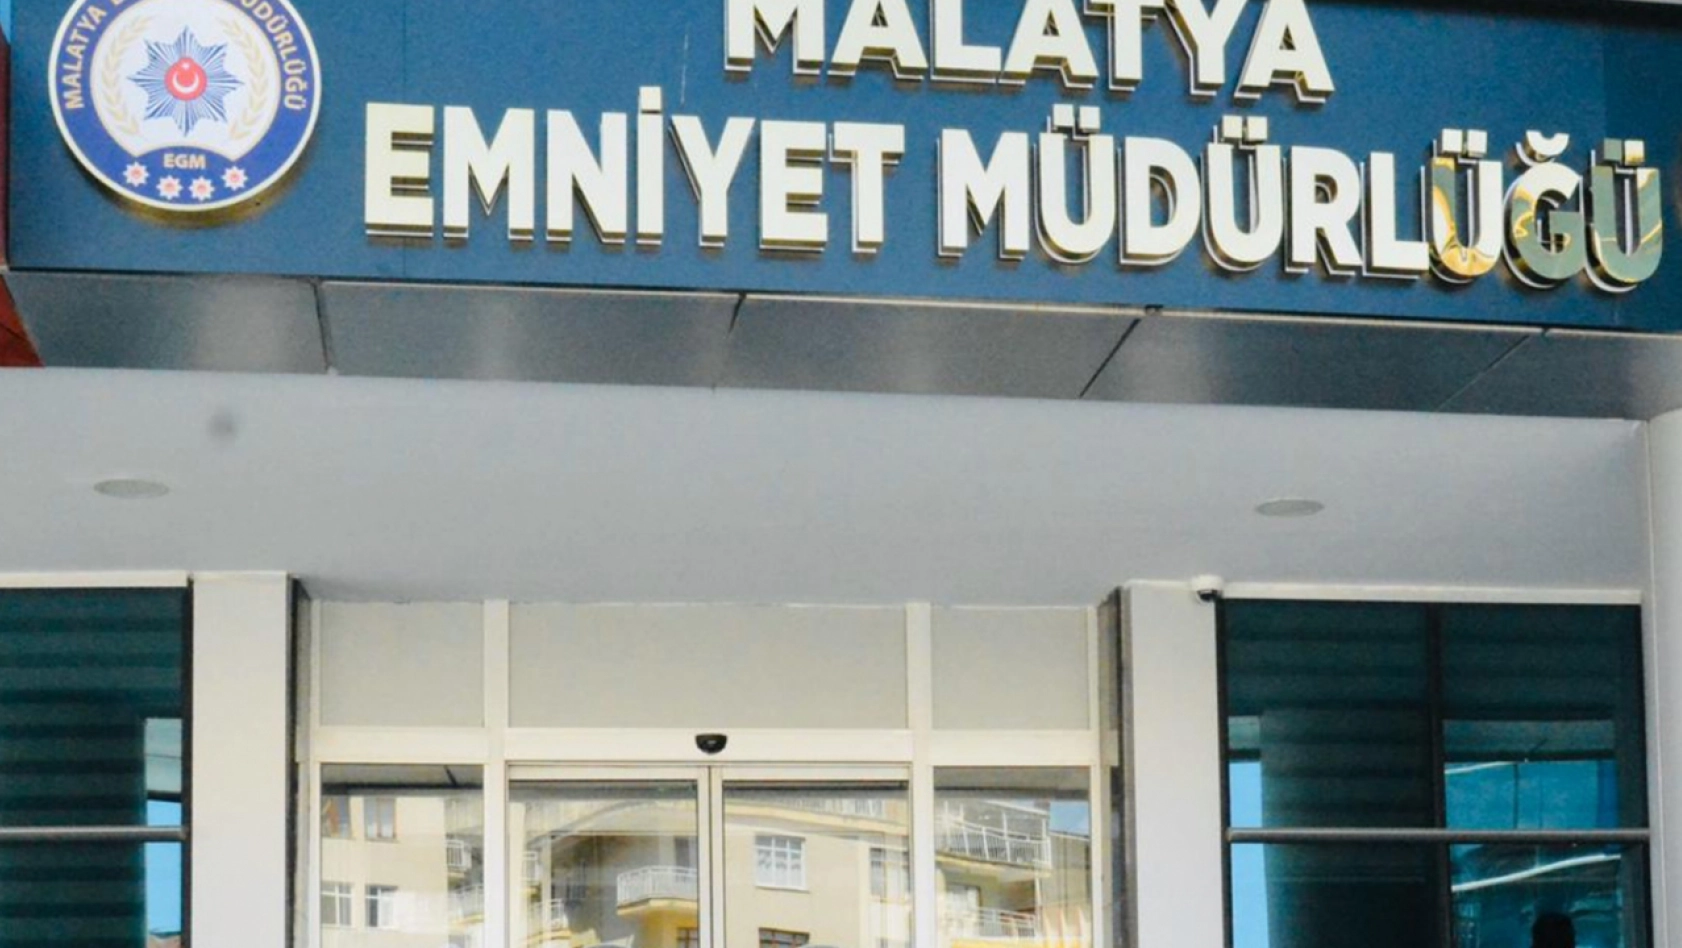 Malatya'da çeşitli suçlardan 326 kişi yakalandı